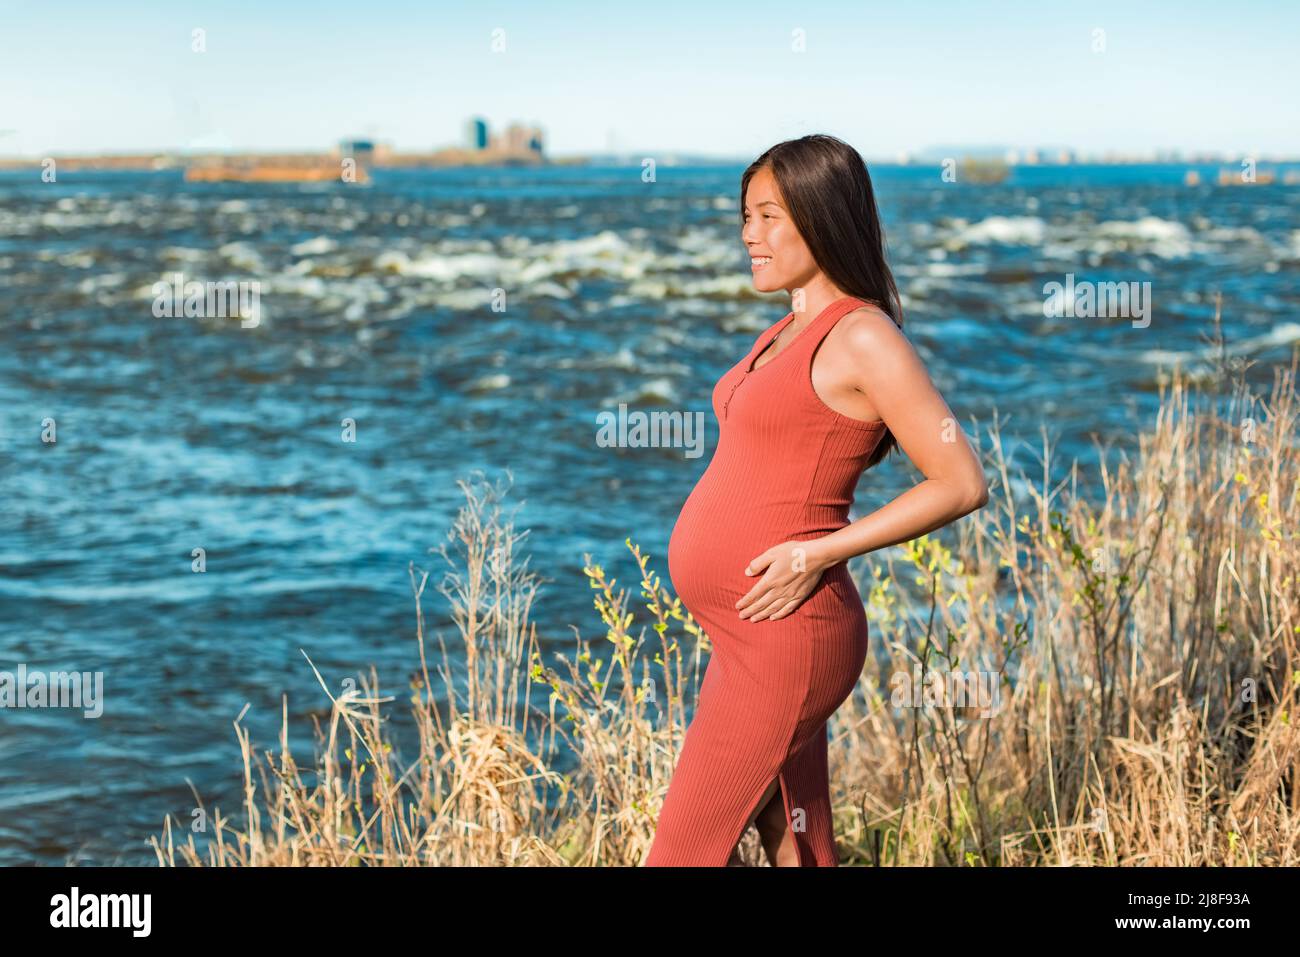 Portrait de maternité de la femme asiatique pendant la grossesse tenant le ventre enceinte contre la nature fond de rivière. Promenade en plein air dans un environnement naturel Banque D'Images